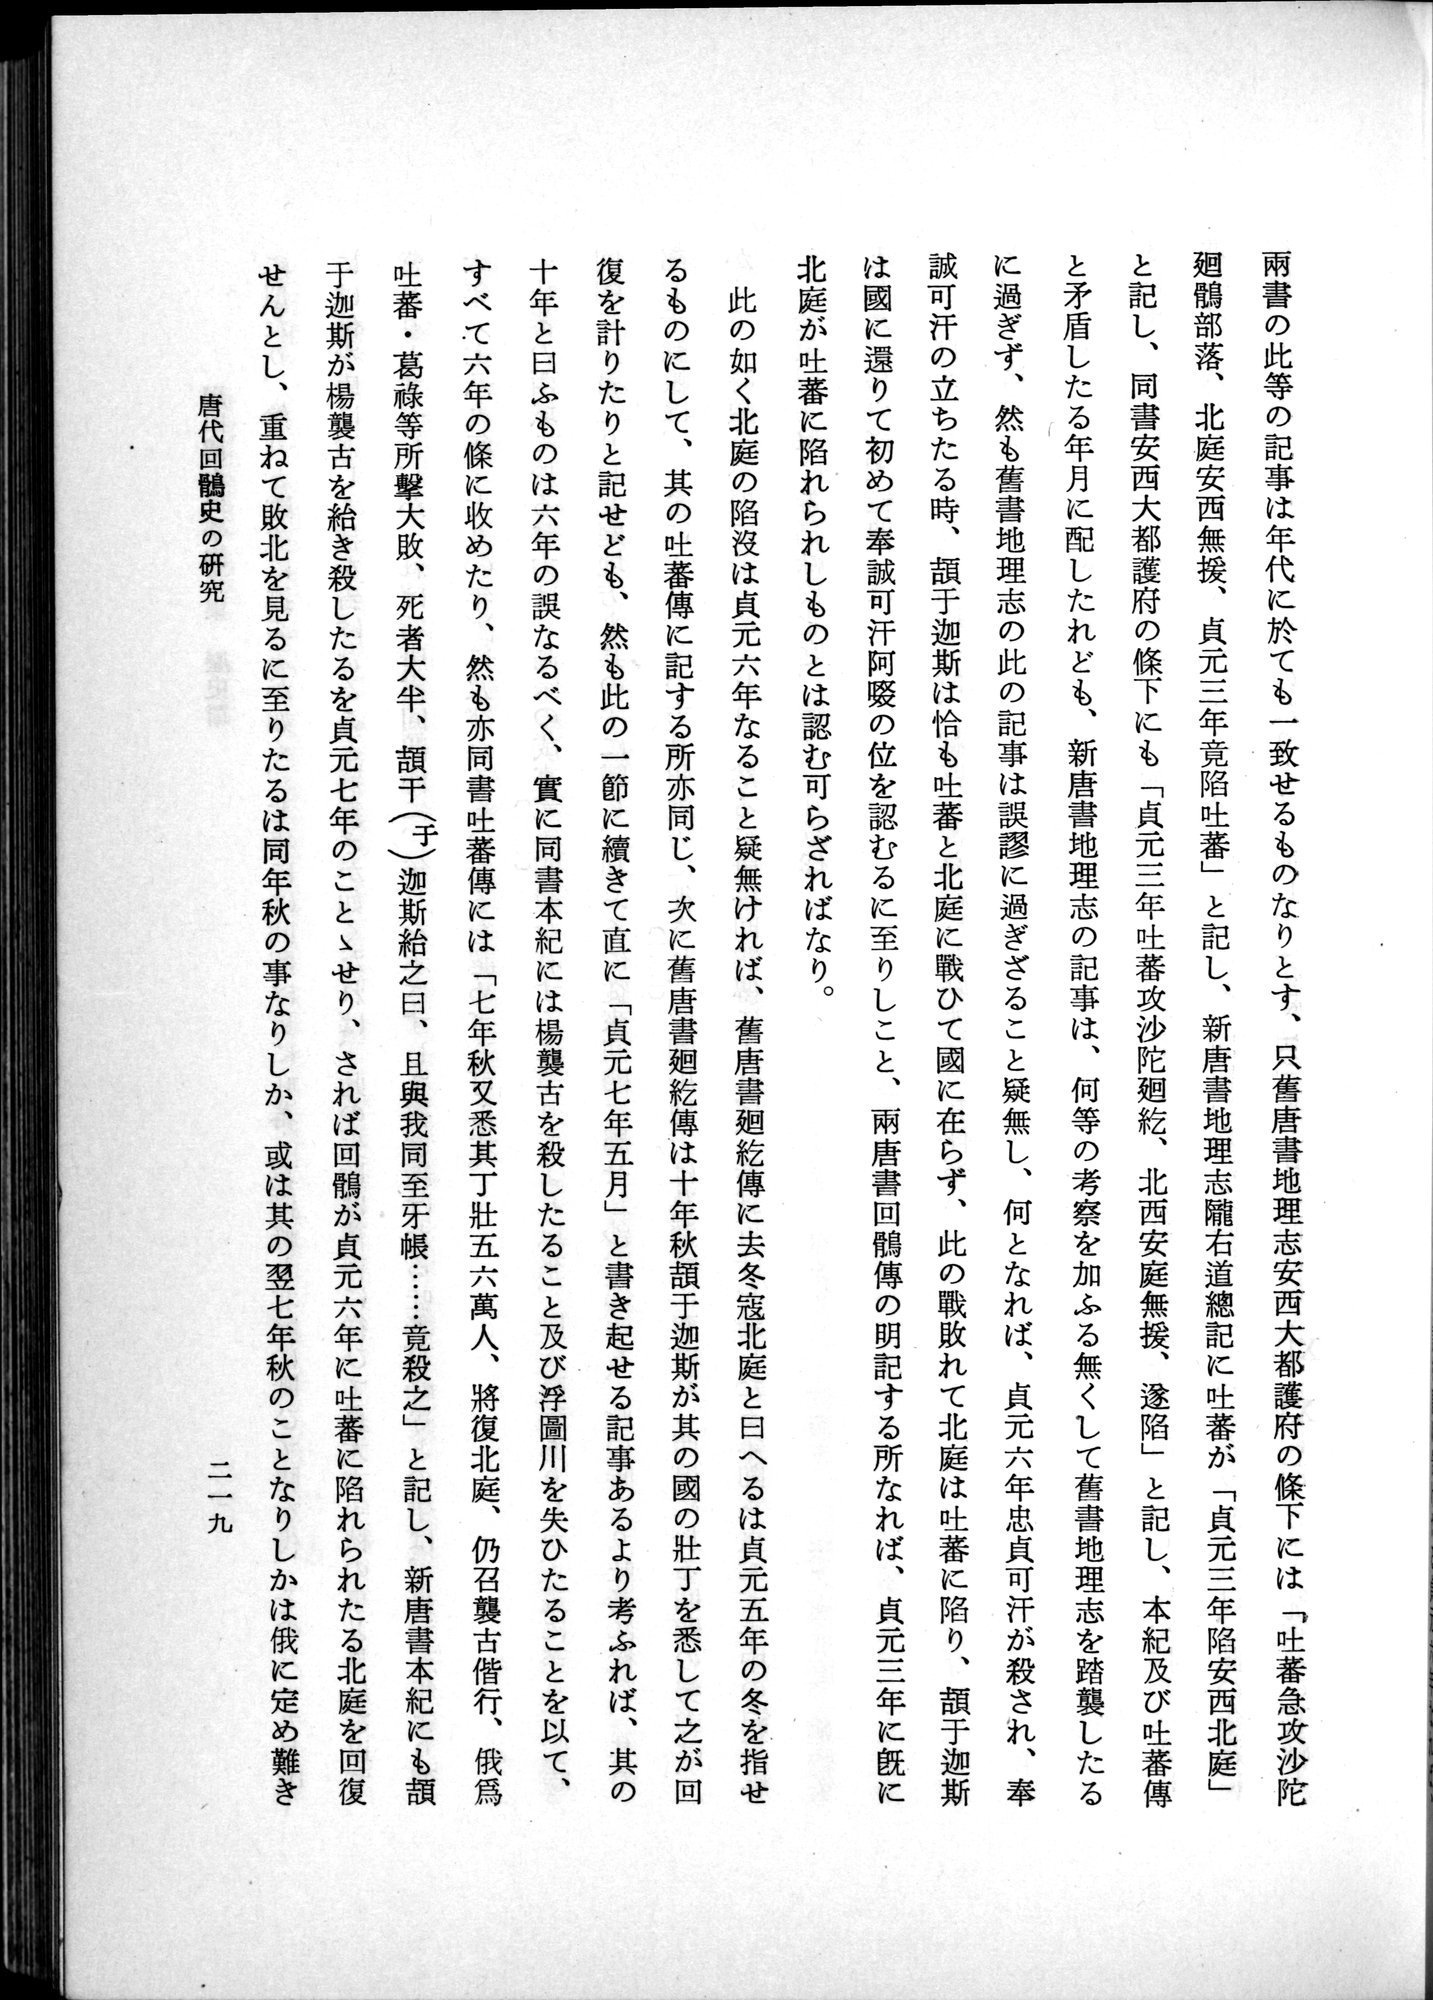 羽田博士史学論文集 : vol.1 / Page 257 (Grayscale High Resolution Image)